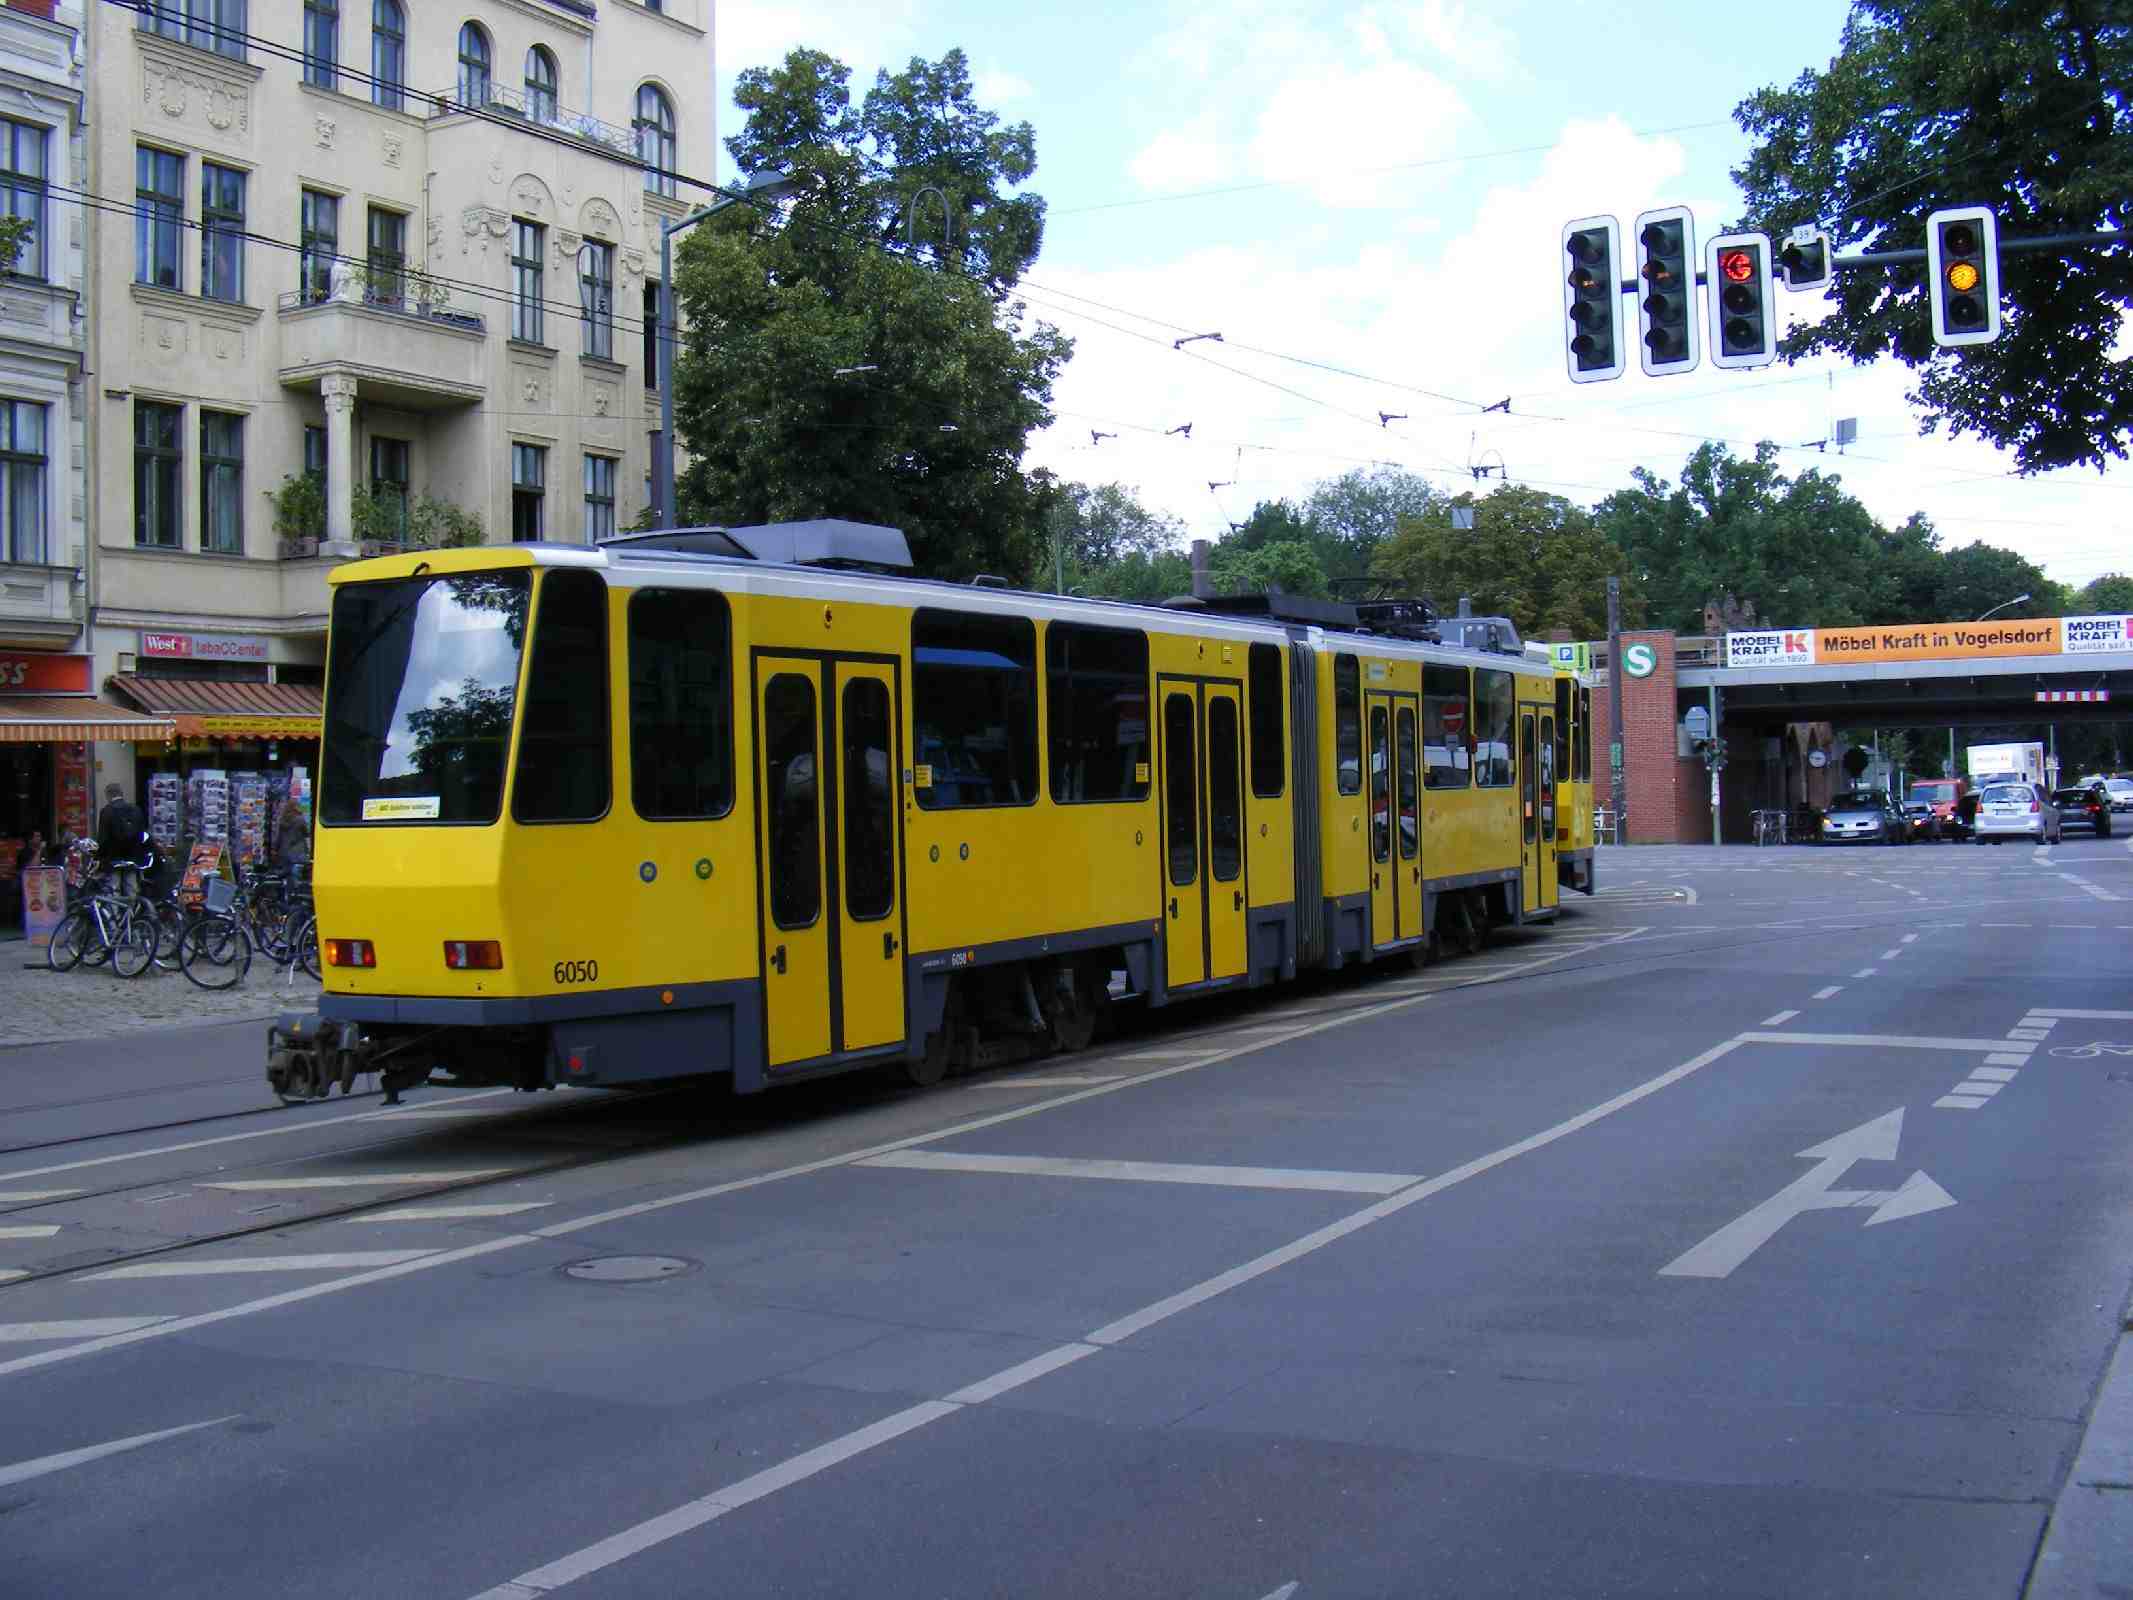 File:Tatra Tram 6050, S-Bahnhof, Berlin Friedrichshagen, Aug 2010 ...